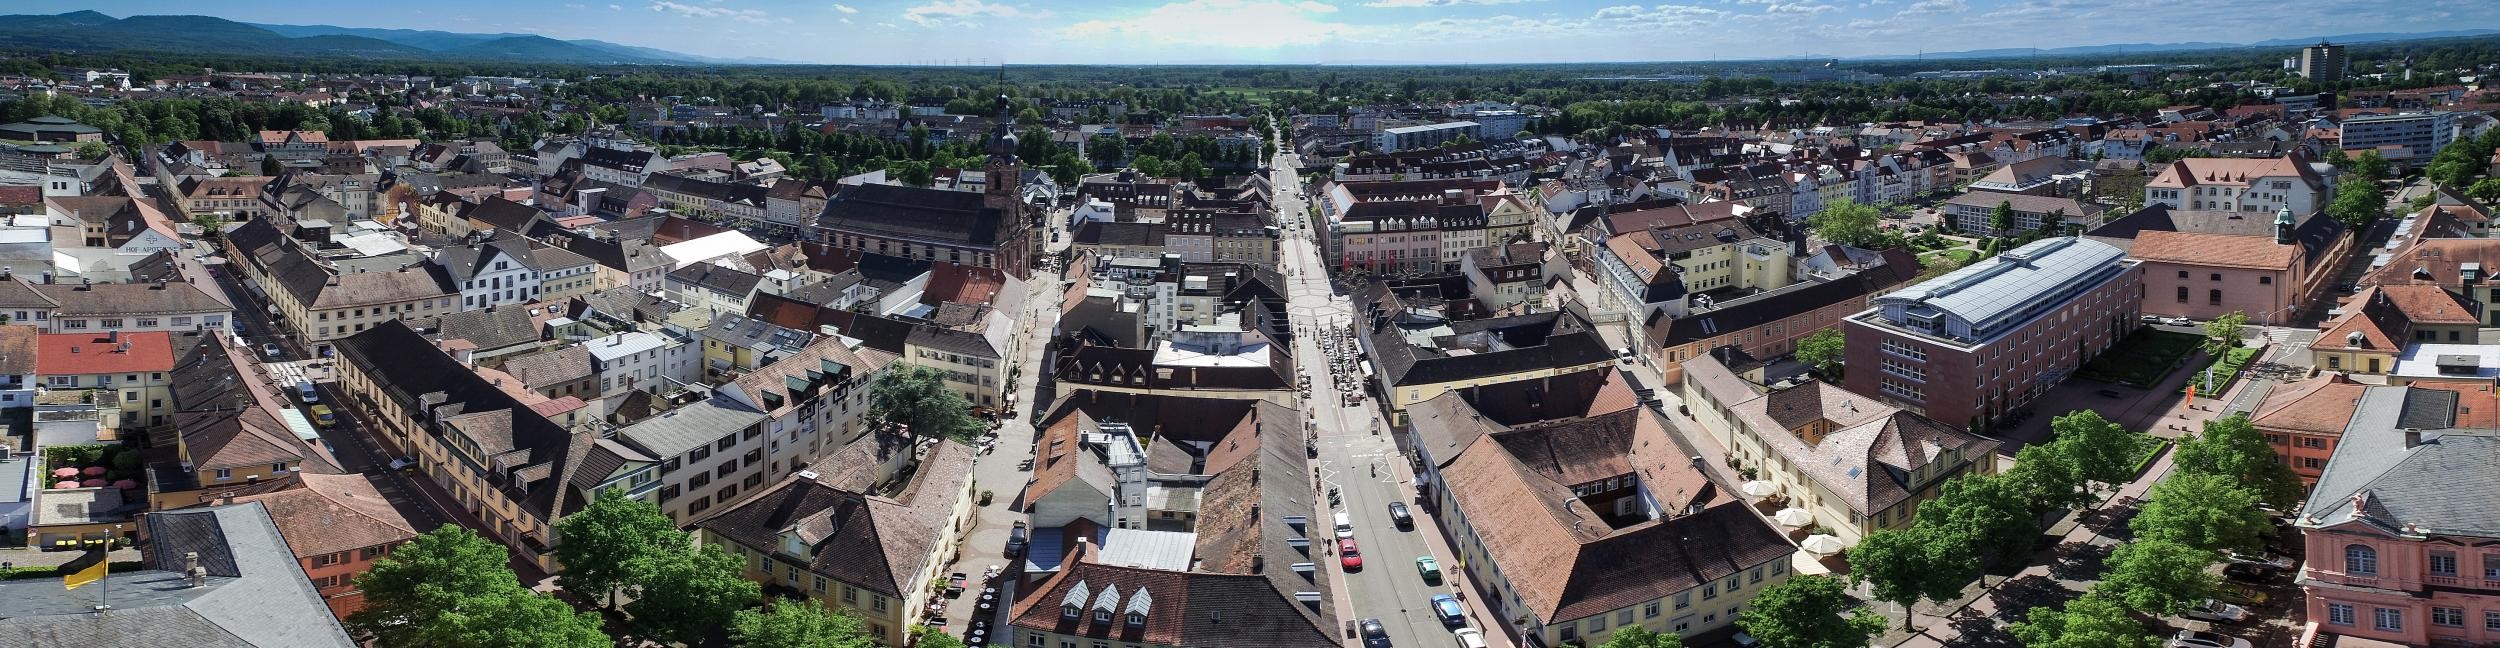 Panorama Luftaufnahme von der Kernstadt